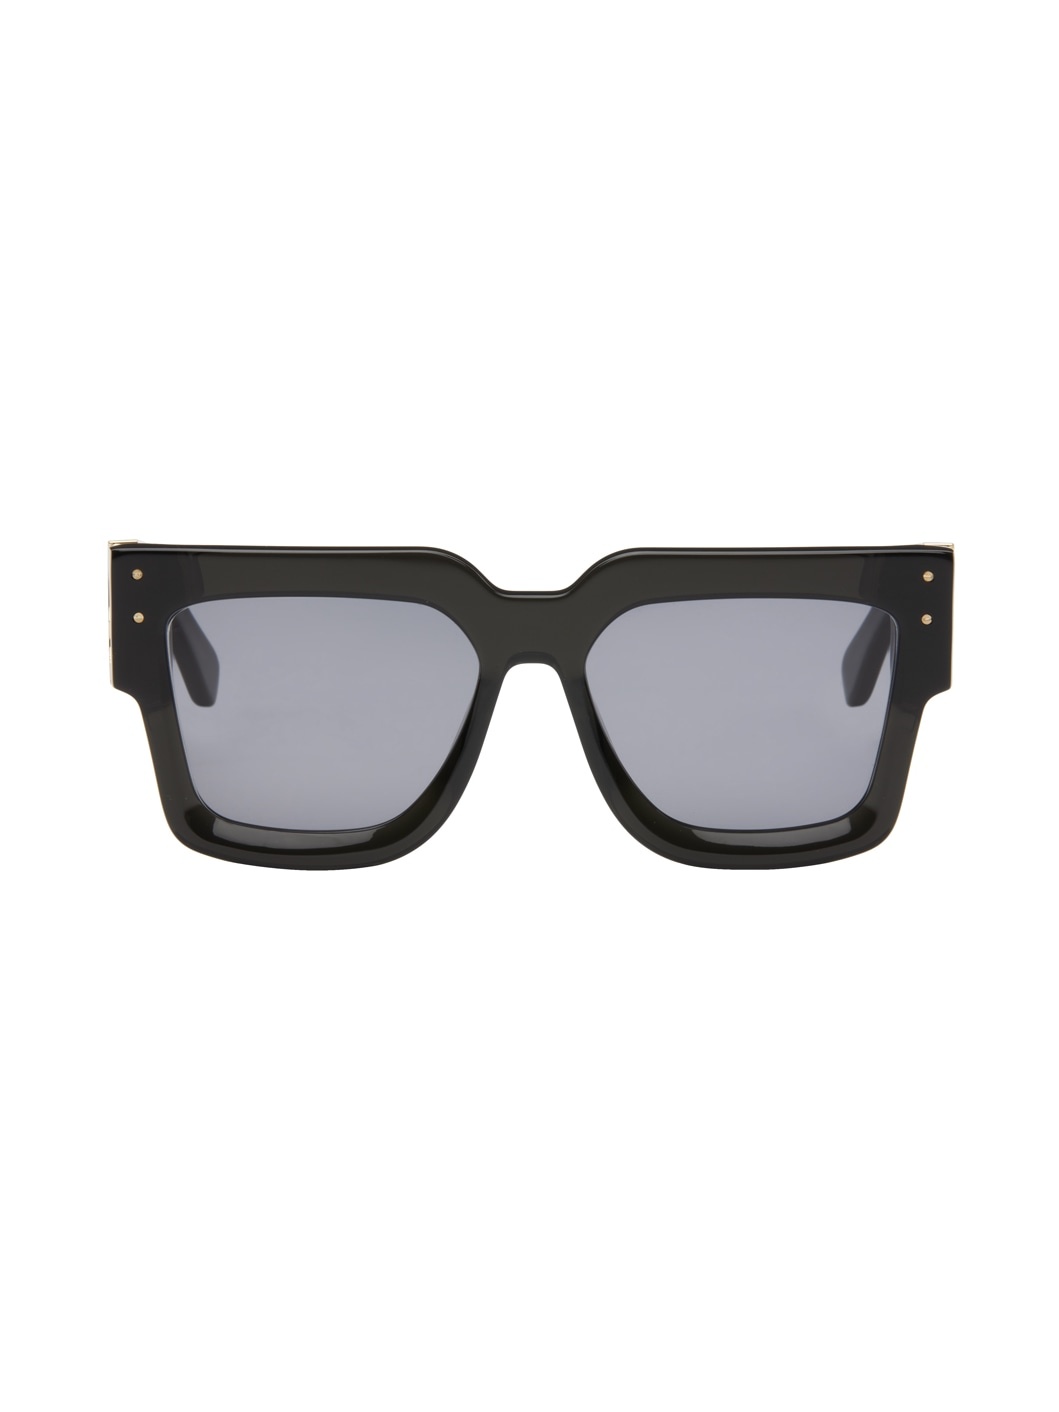 Black Jumbo MA Sunglasses - 1